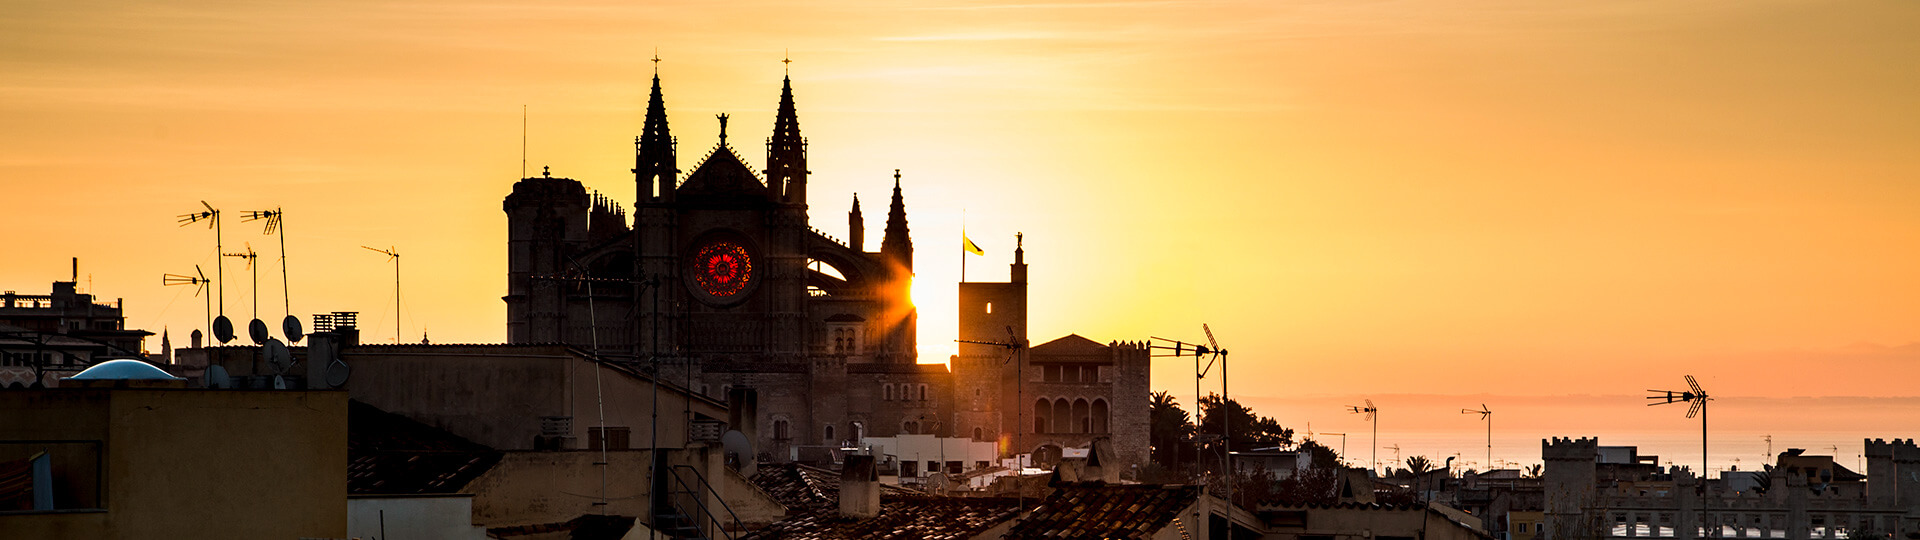 Cattedrale di Palma di Maiorca al tramonto